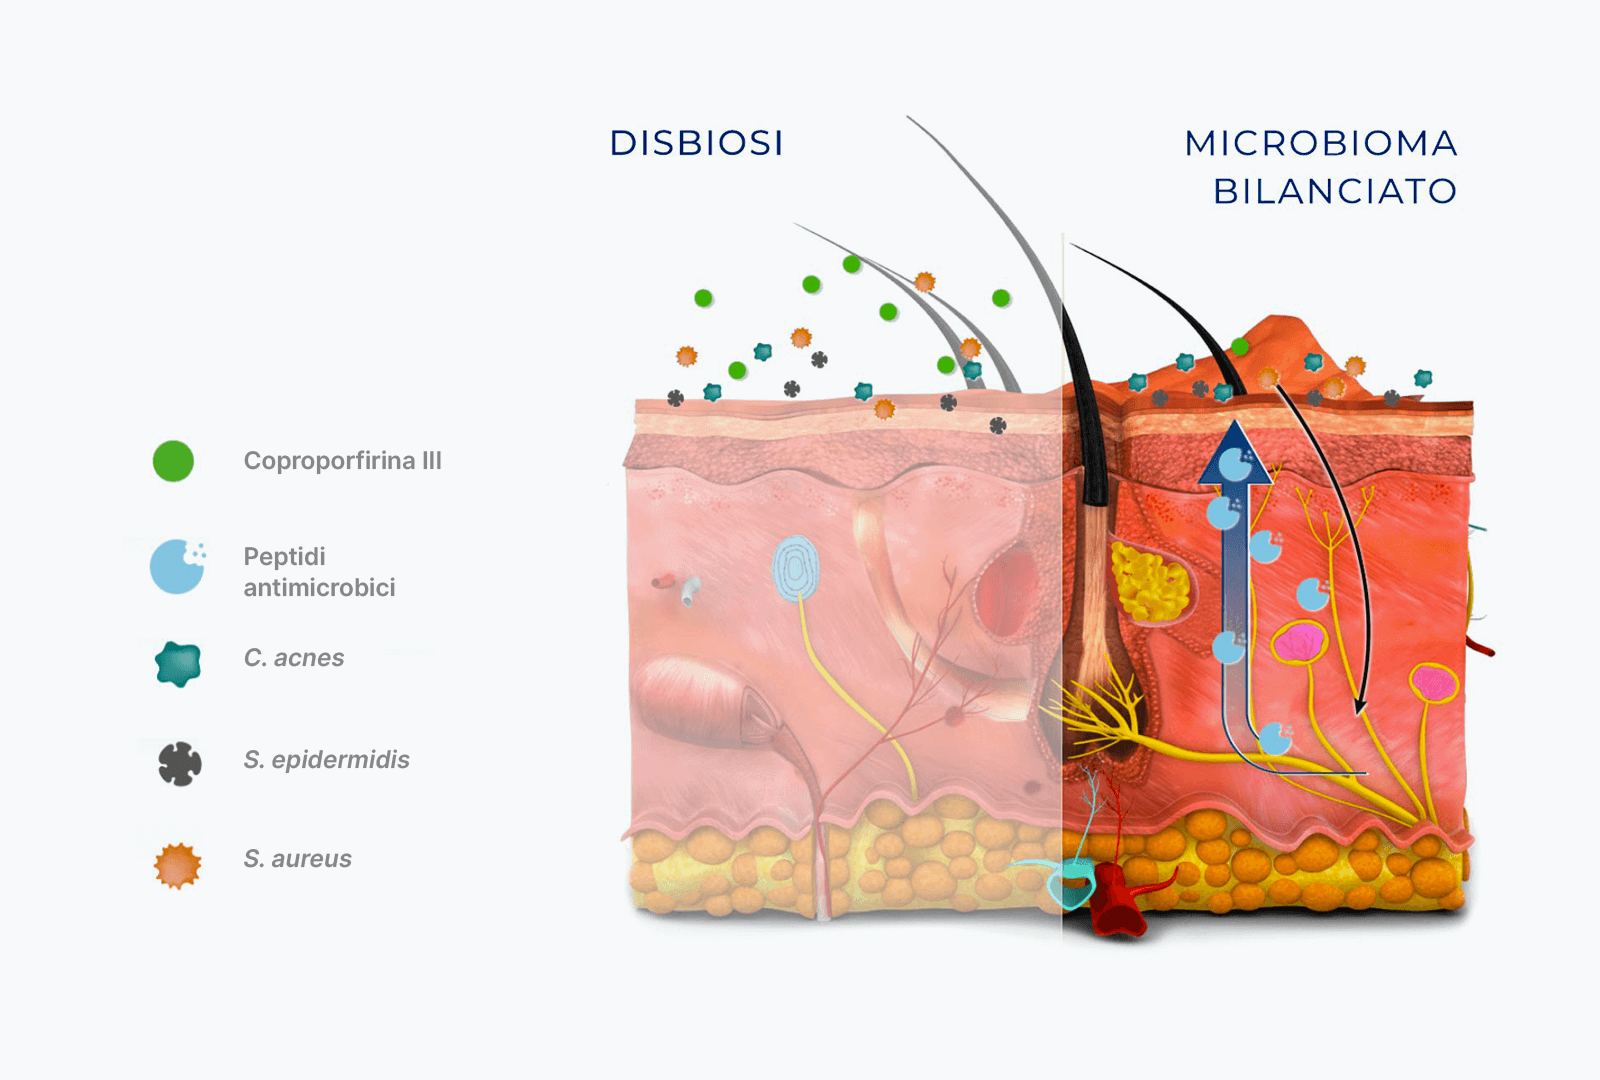 Immagine della pelle a confronto, con un microbioma bilanciato e una disbiosi 